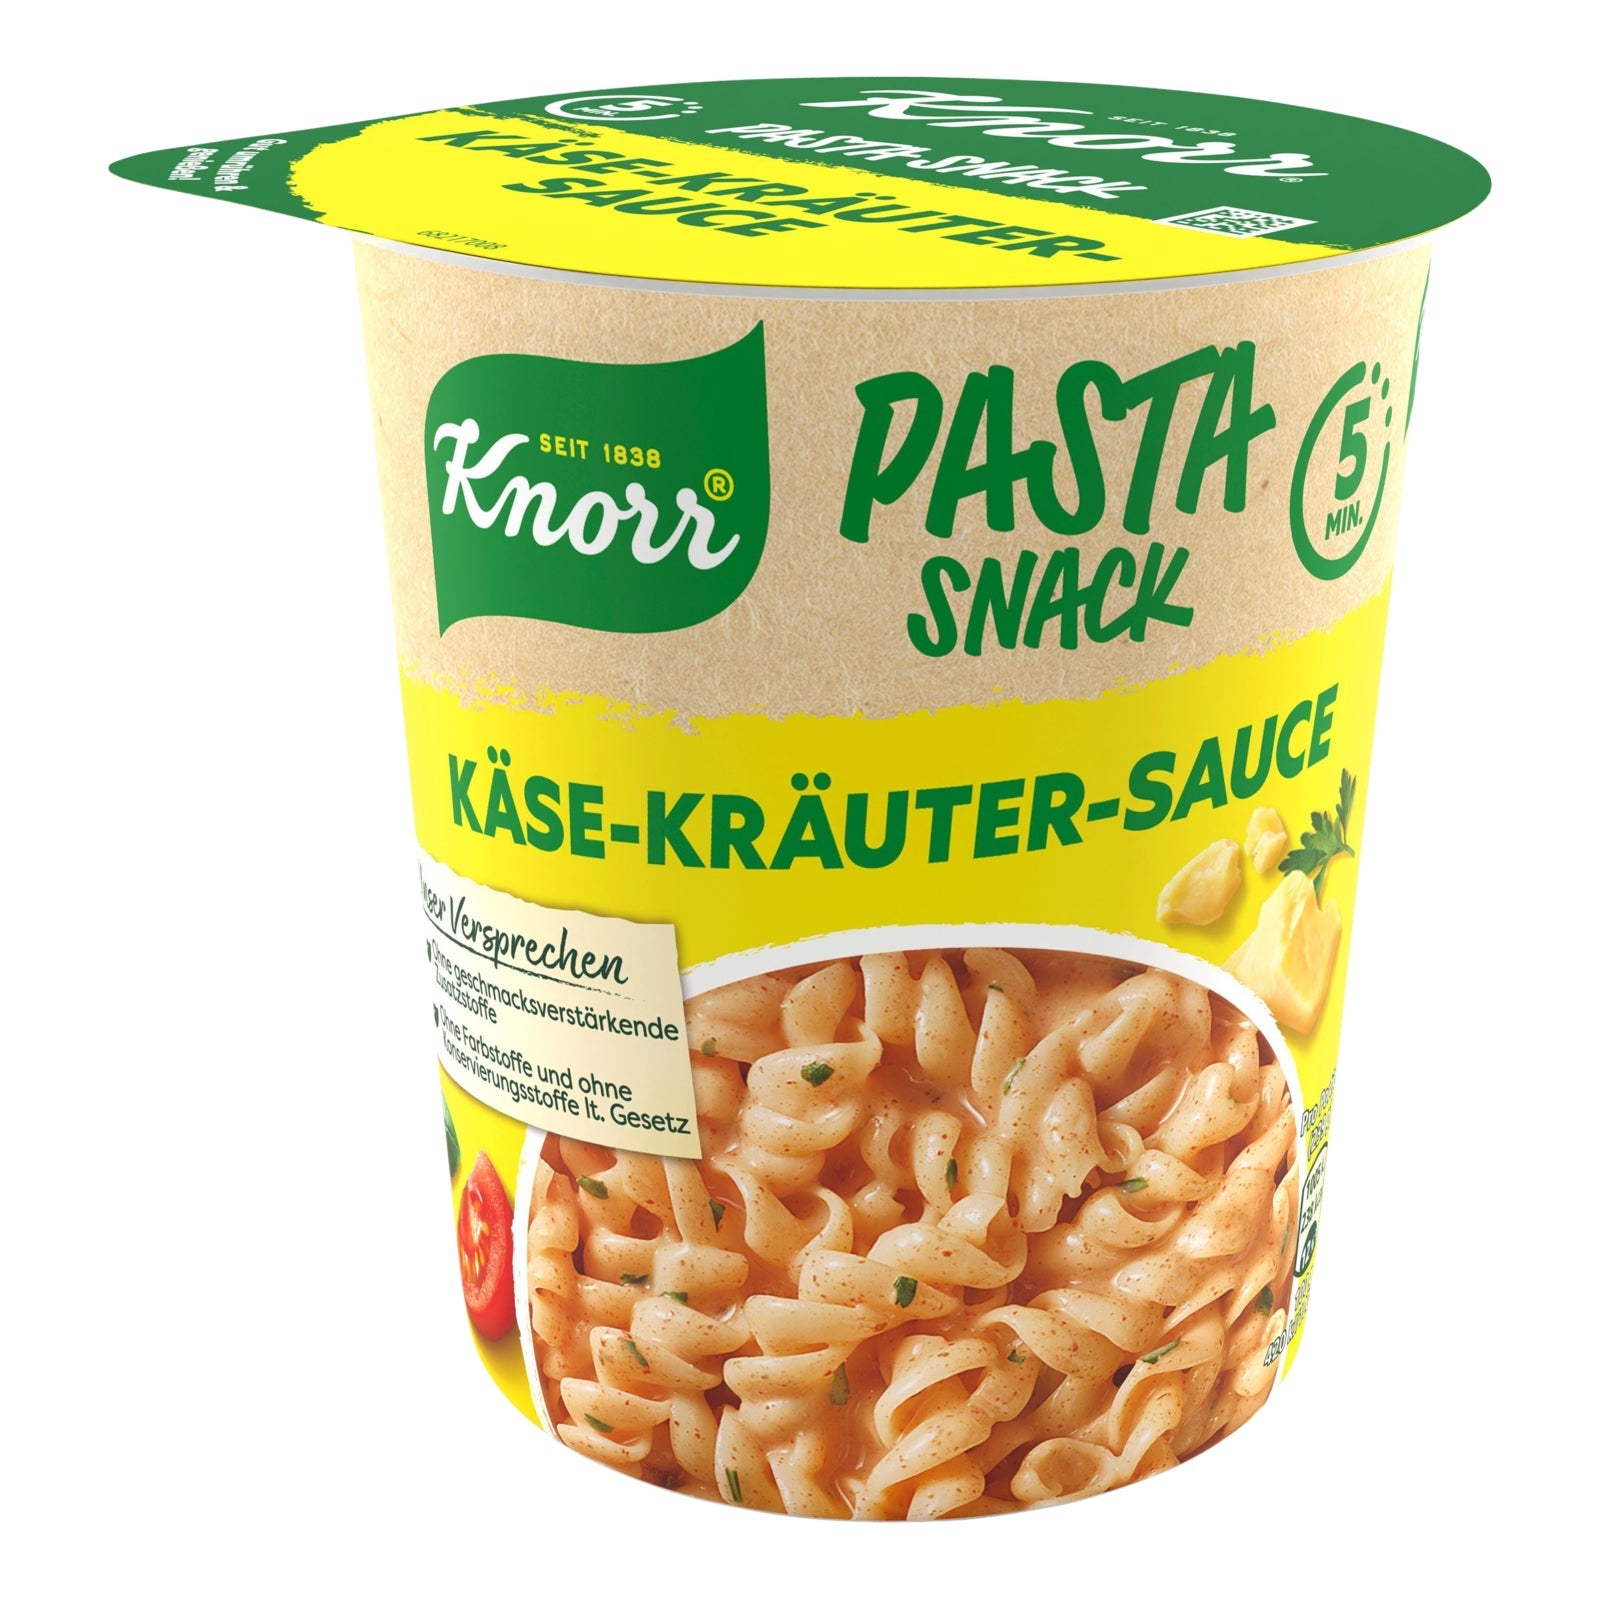 Pasta Snack Käse-Kräuter-Sauce 59g